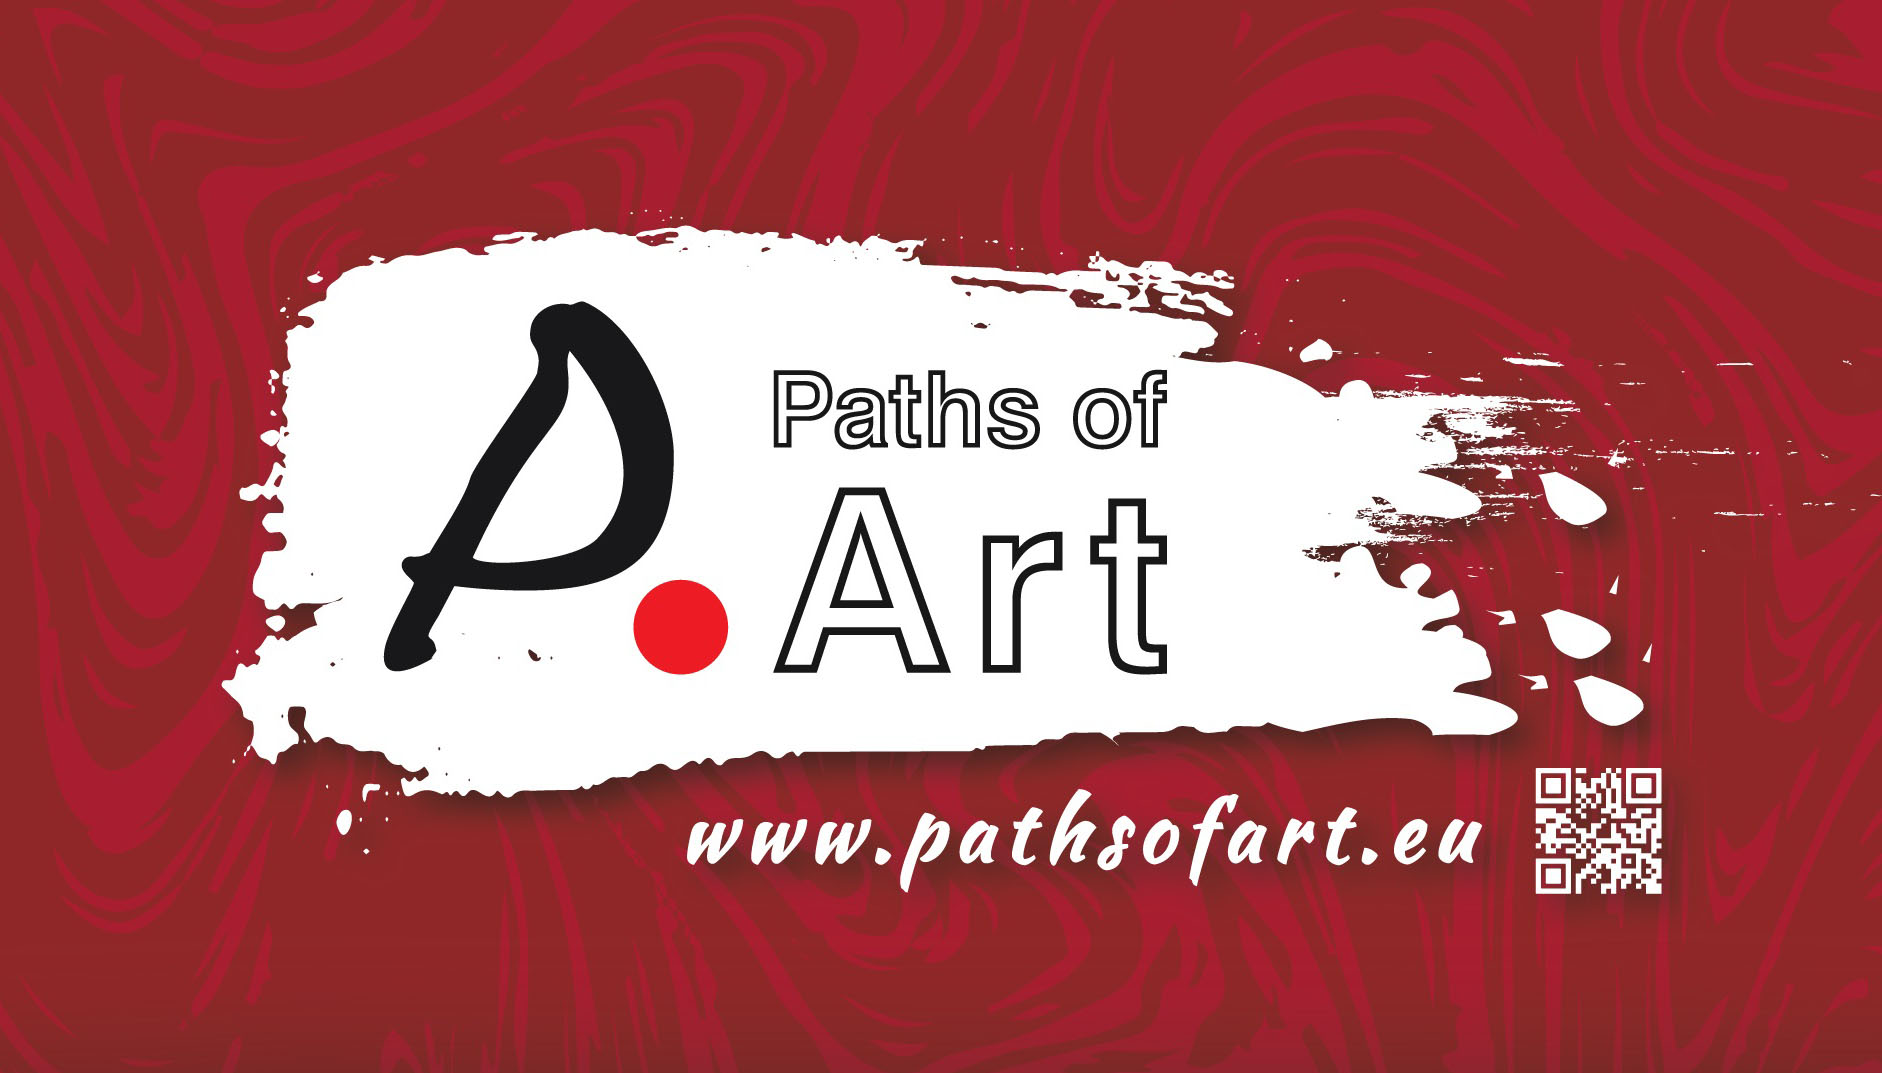 Καλαμάτα: “Paths of Art” με τη συμμετοχή 53 καλλιτεχνών από 9 χώρες